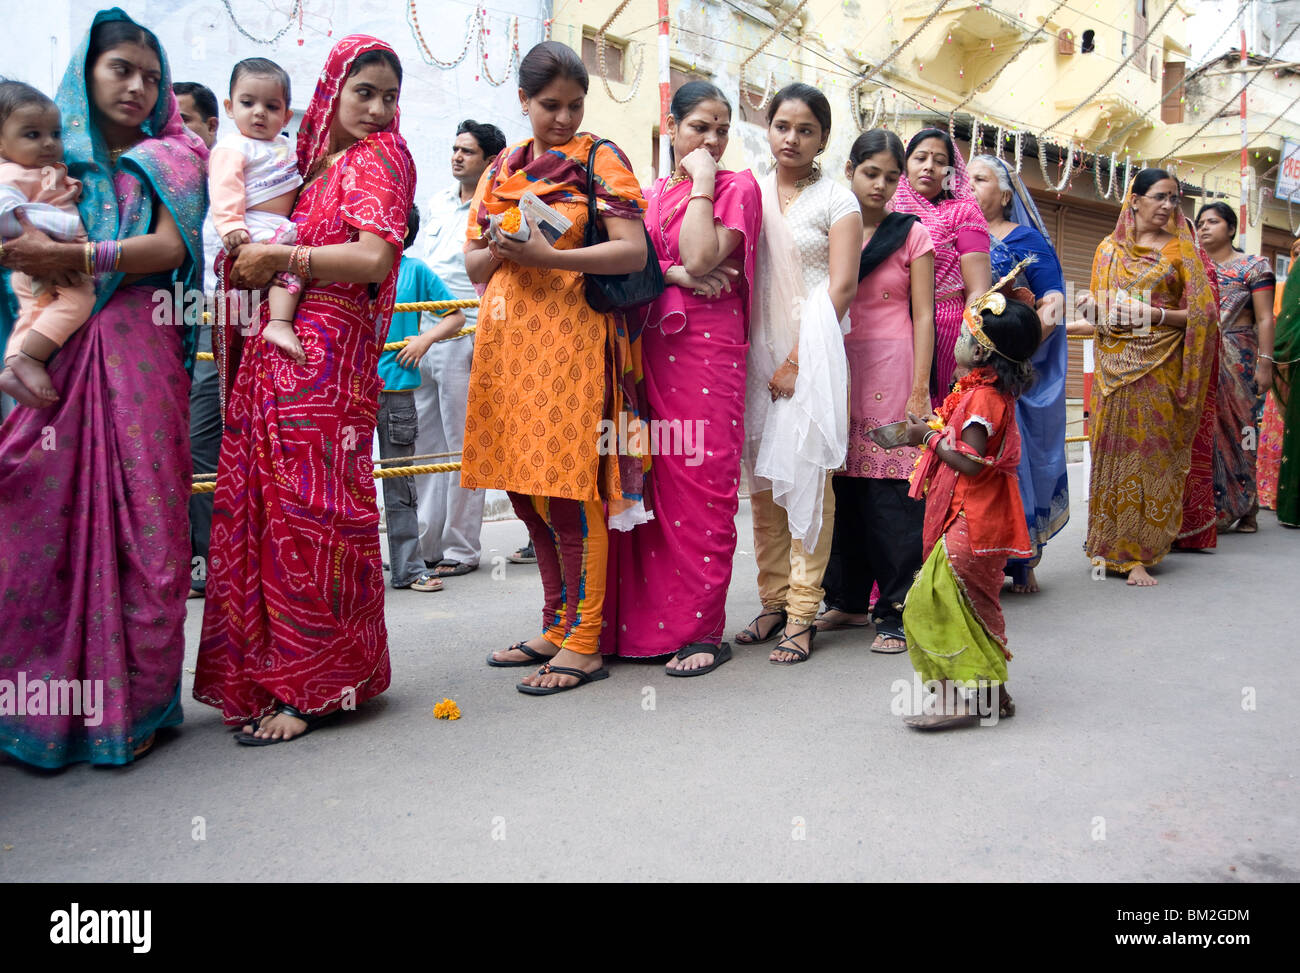 Frauen-Warteschlangen für Diwali Tempel Puja, angesprochen von einem Kind betteln um Almosen, Udaipur, Rajasthan, Indien Stockfoto